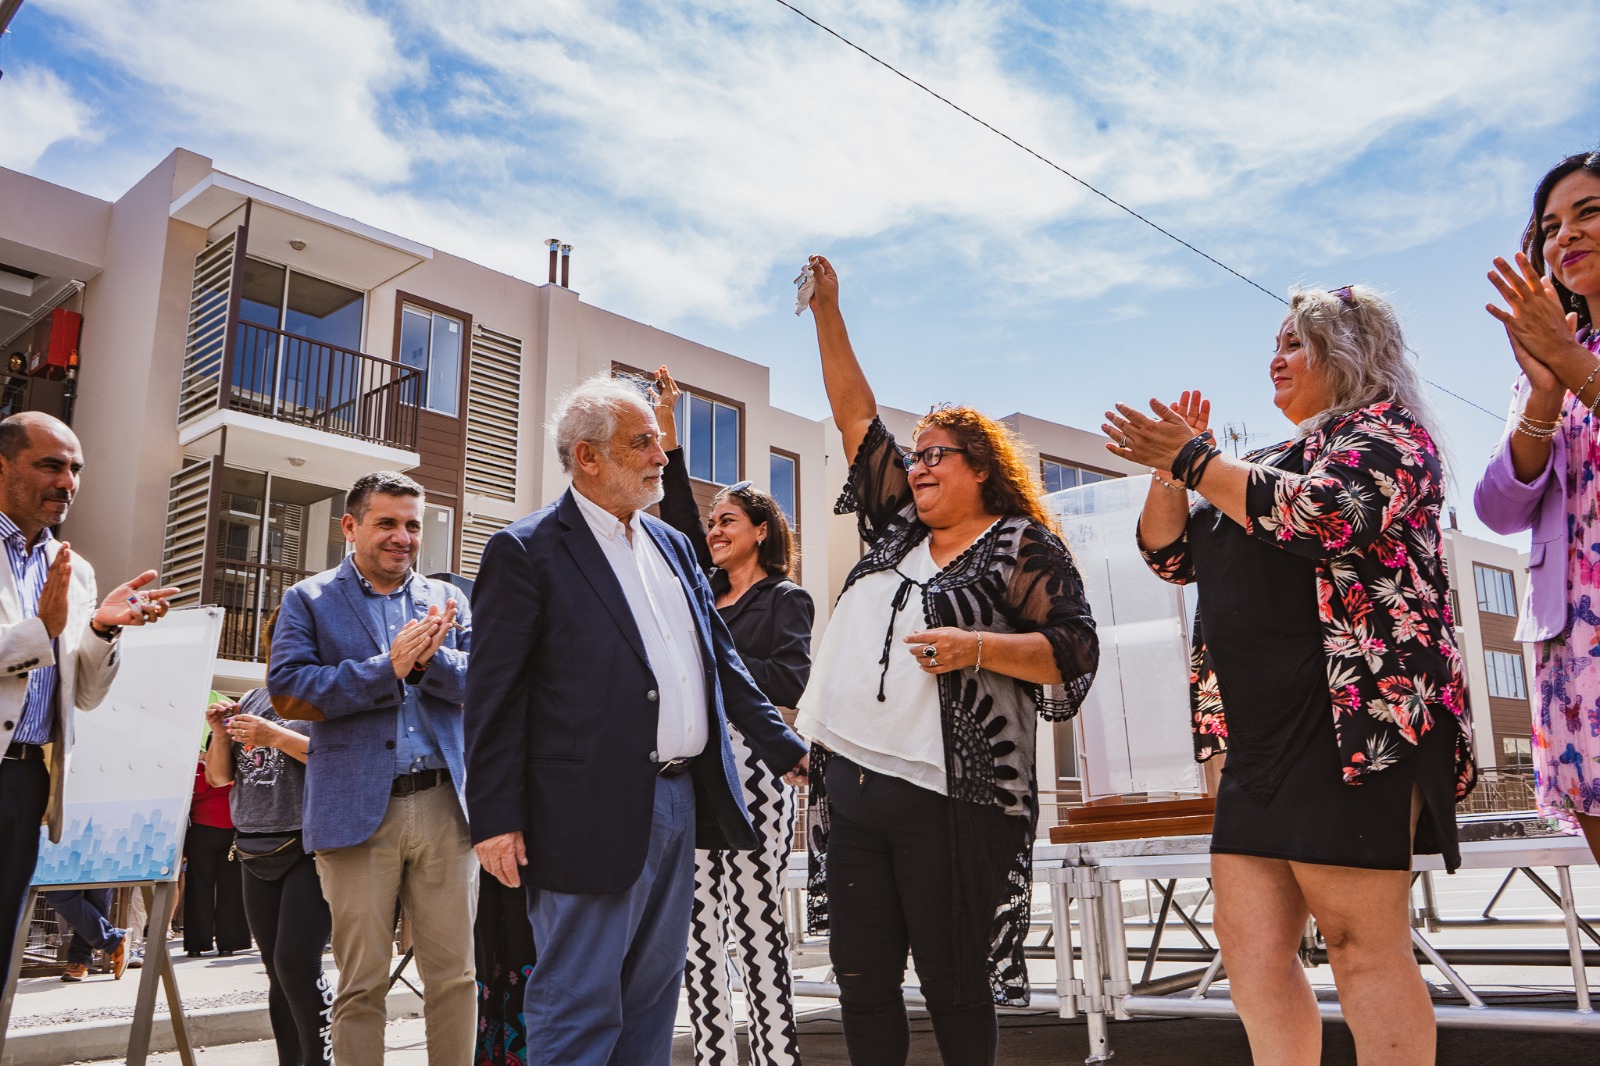 Ministro Montes entrega 520 viviendas en Arica: “El Presidente quiere entregar 260 mil viviendas y estamos trabajando para ello”